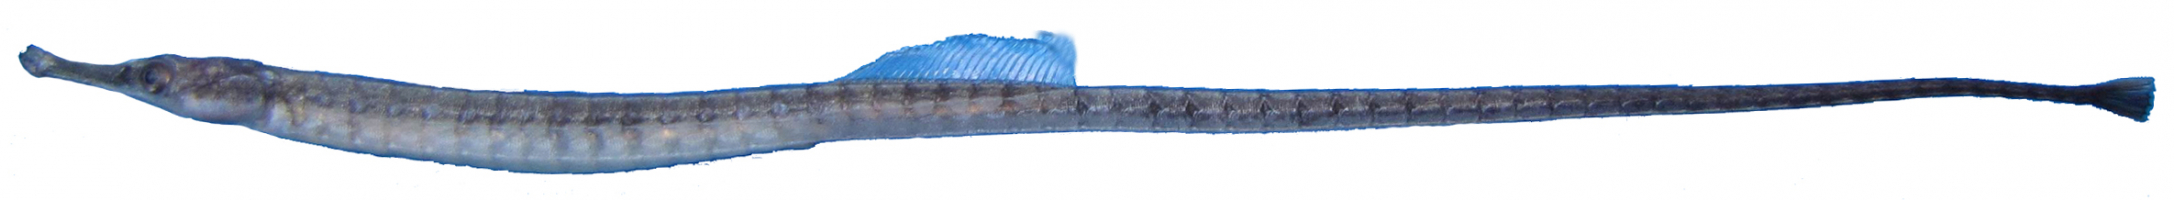 Syngnathus caspius